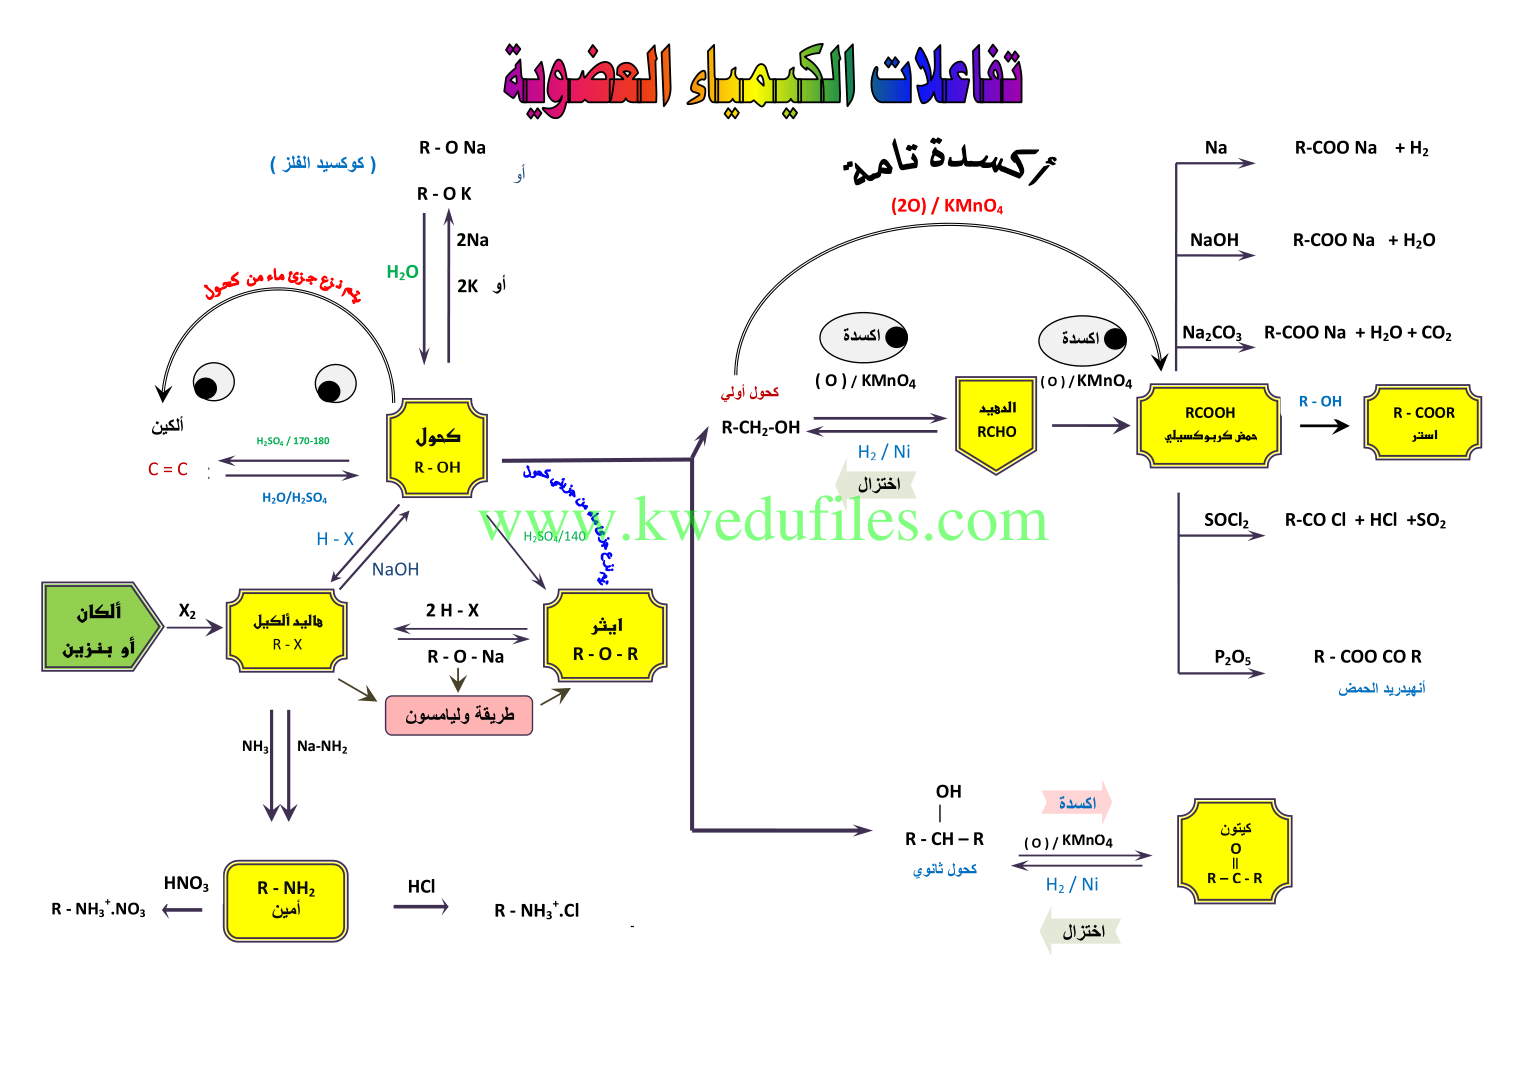 تفاعلات الكيمياء العضوية في مادة الكيمياء الصف الثاني عشر العلمي كيمياء الفصل الثاني ملفات الكويت التعليمية